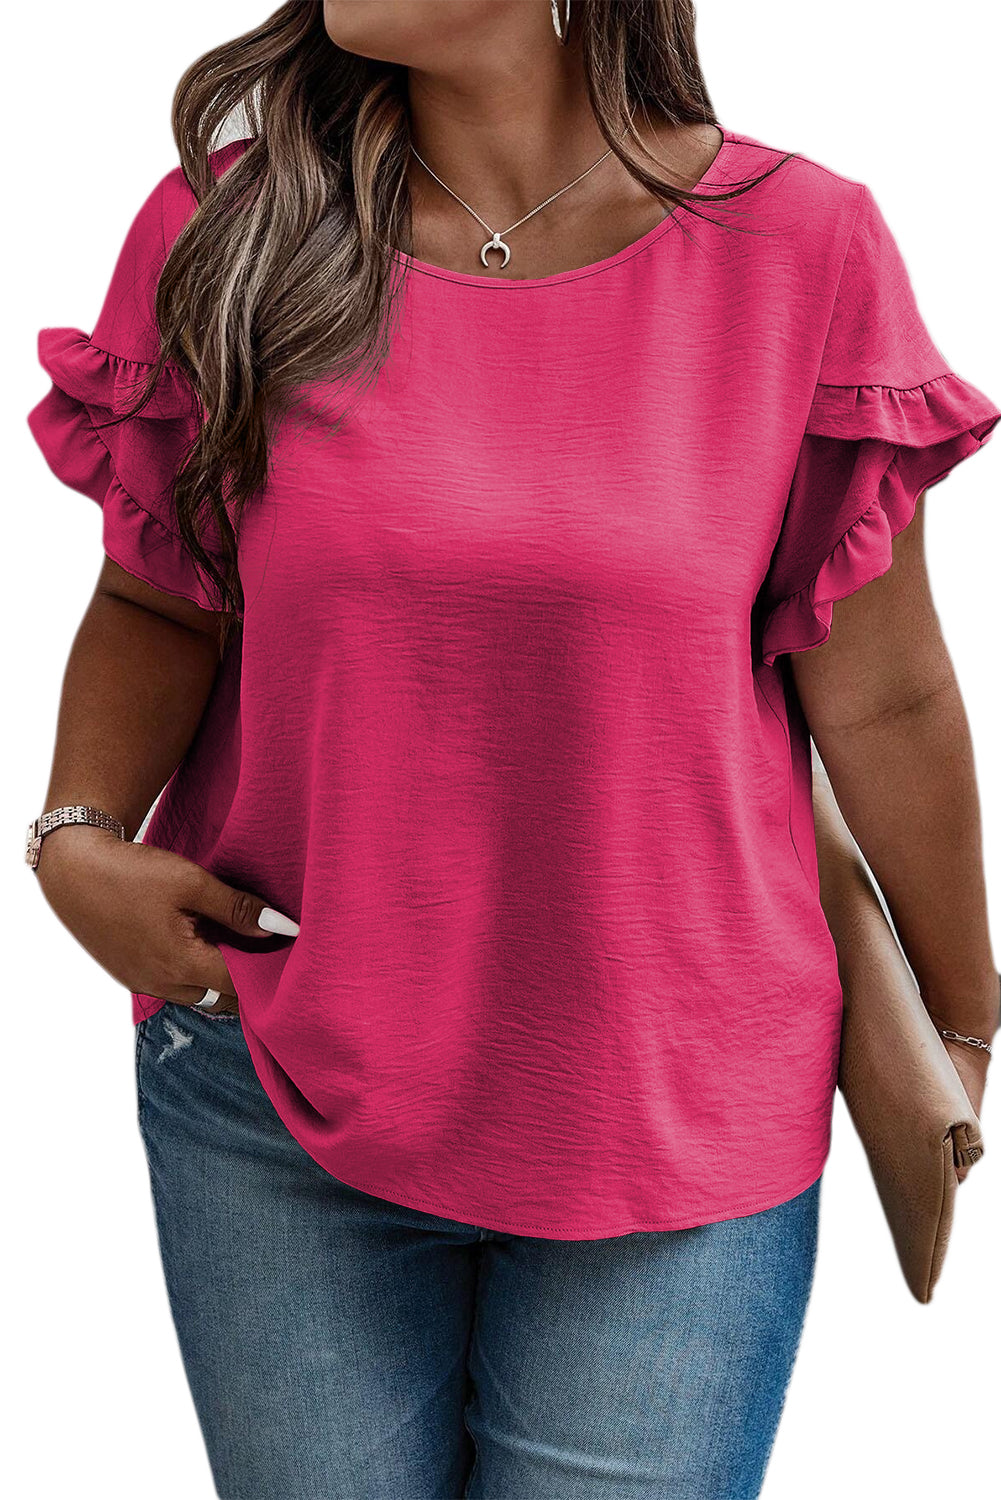 Svijetlo ružičasta majica s naborima kratkih rukava veće veličine